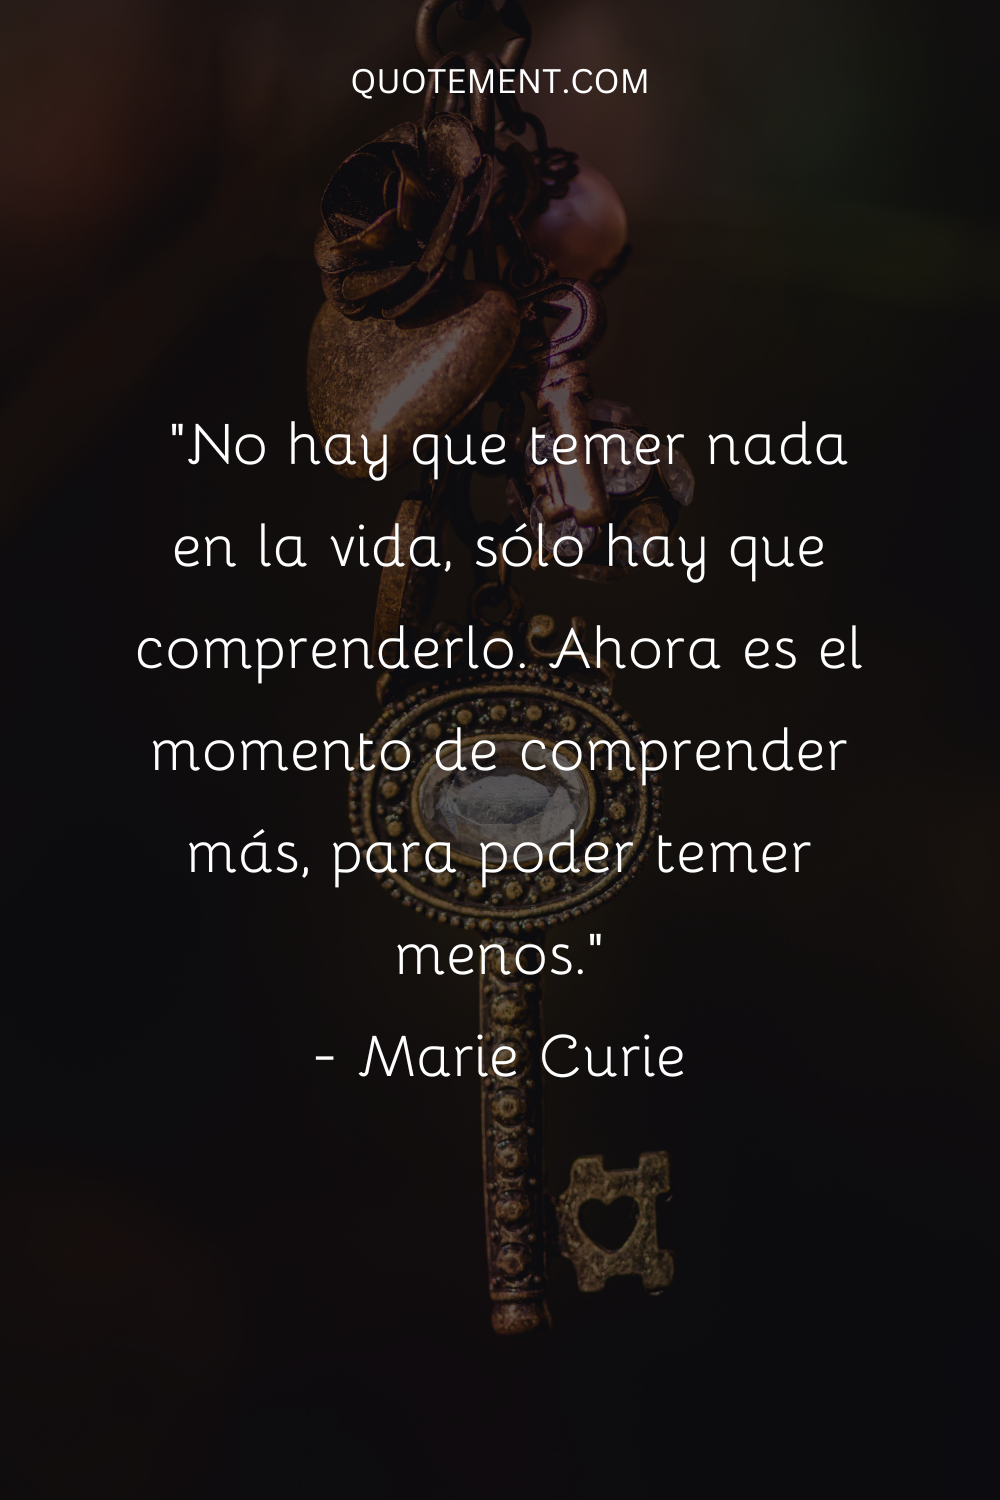 "No hay que temer nada en la vida, sólo hay que comprenderlo. Ahora es el momento de comprender más, para poder temer menos". - Marie Curie